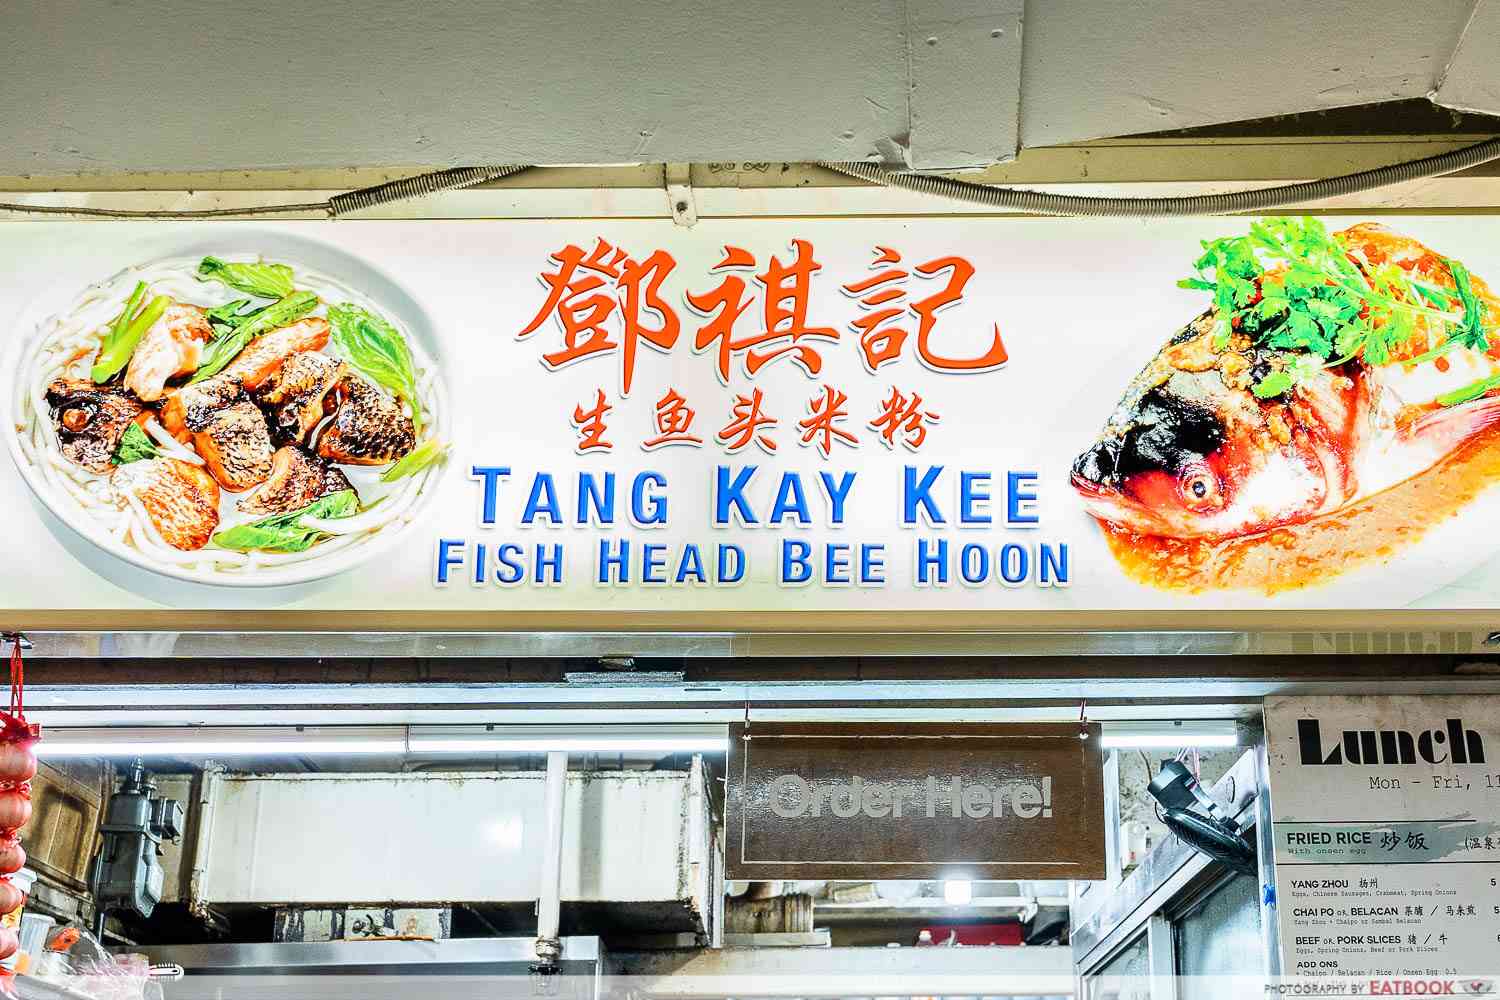 Tang Kay Kee storefront